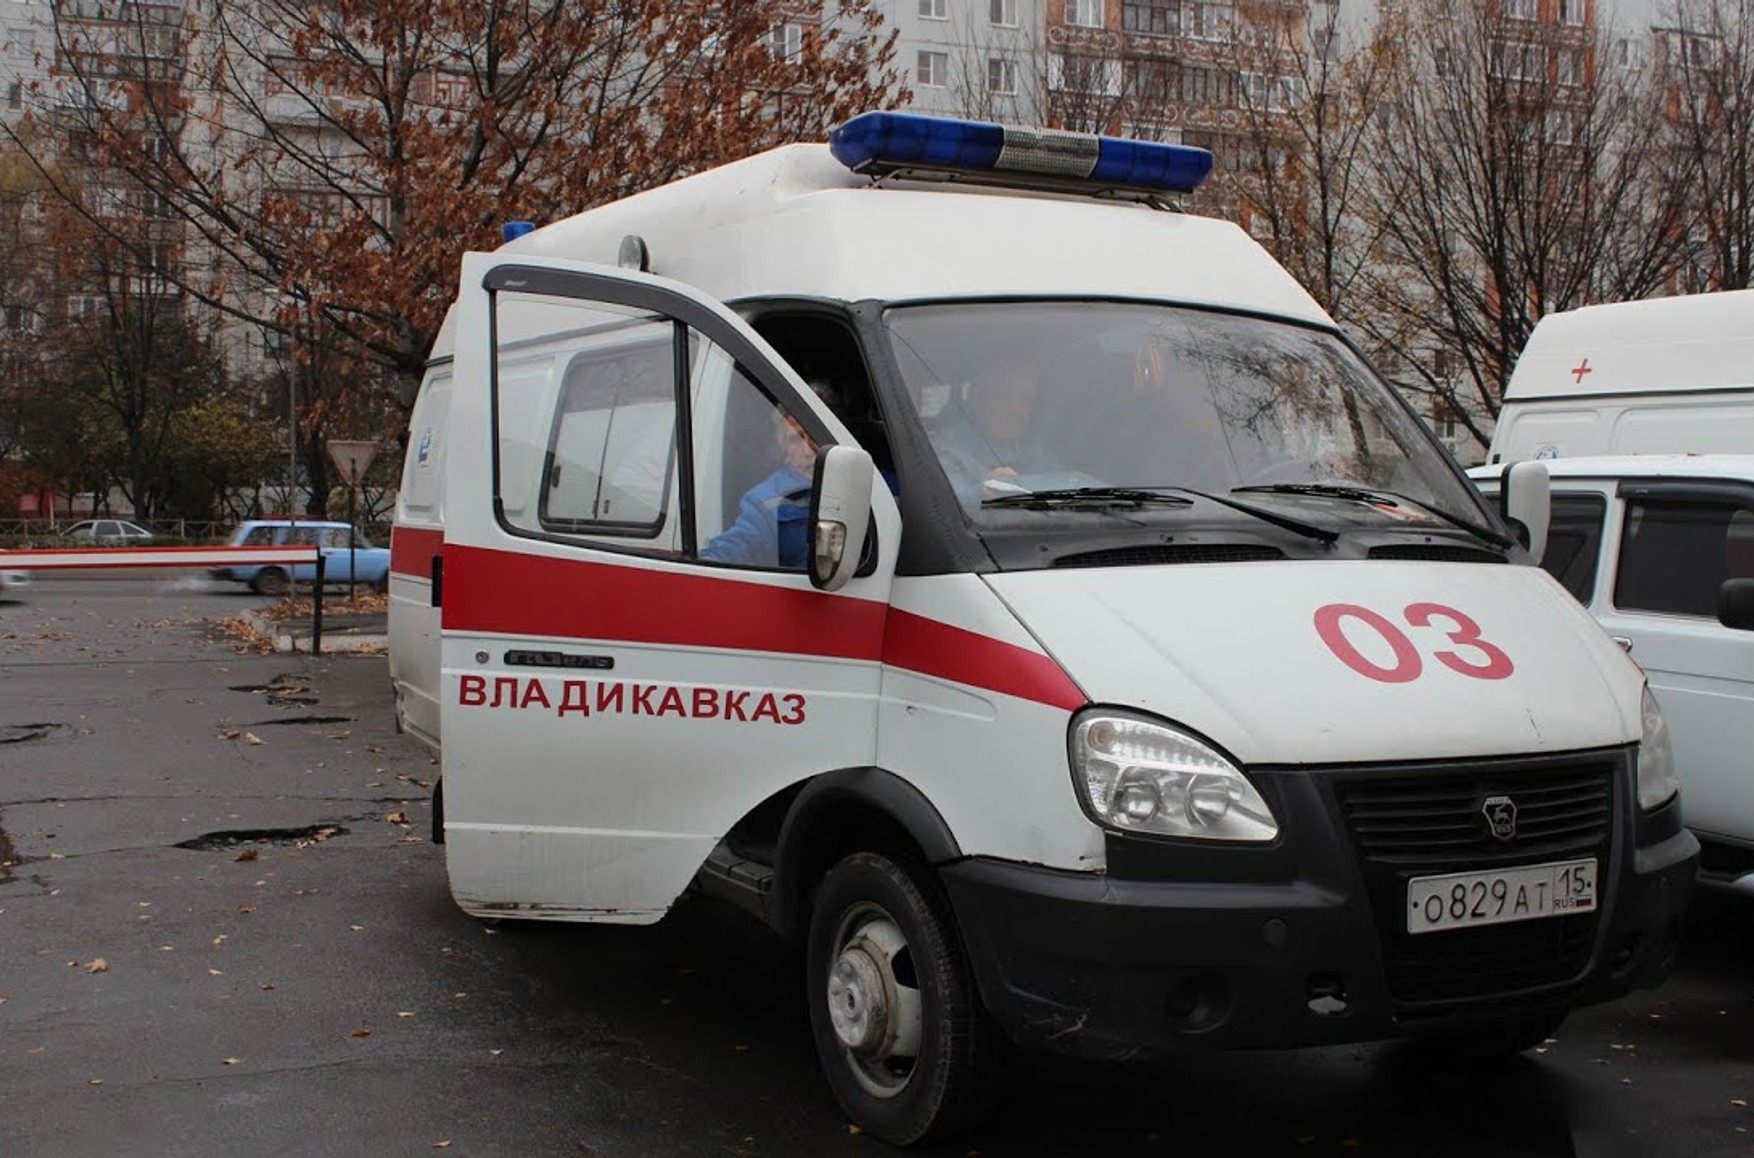 У лікарні Владикавказа через прорив труби з киснем померли 9 осіб